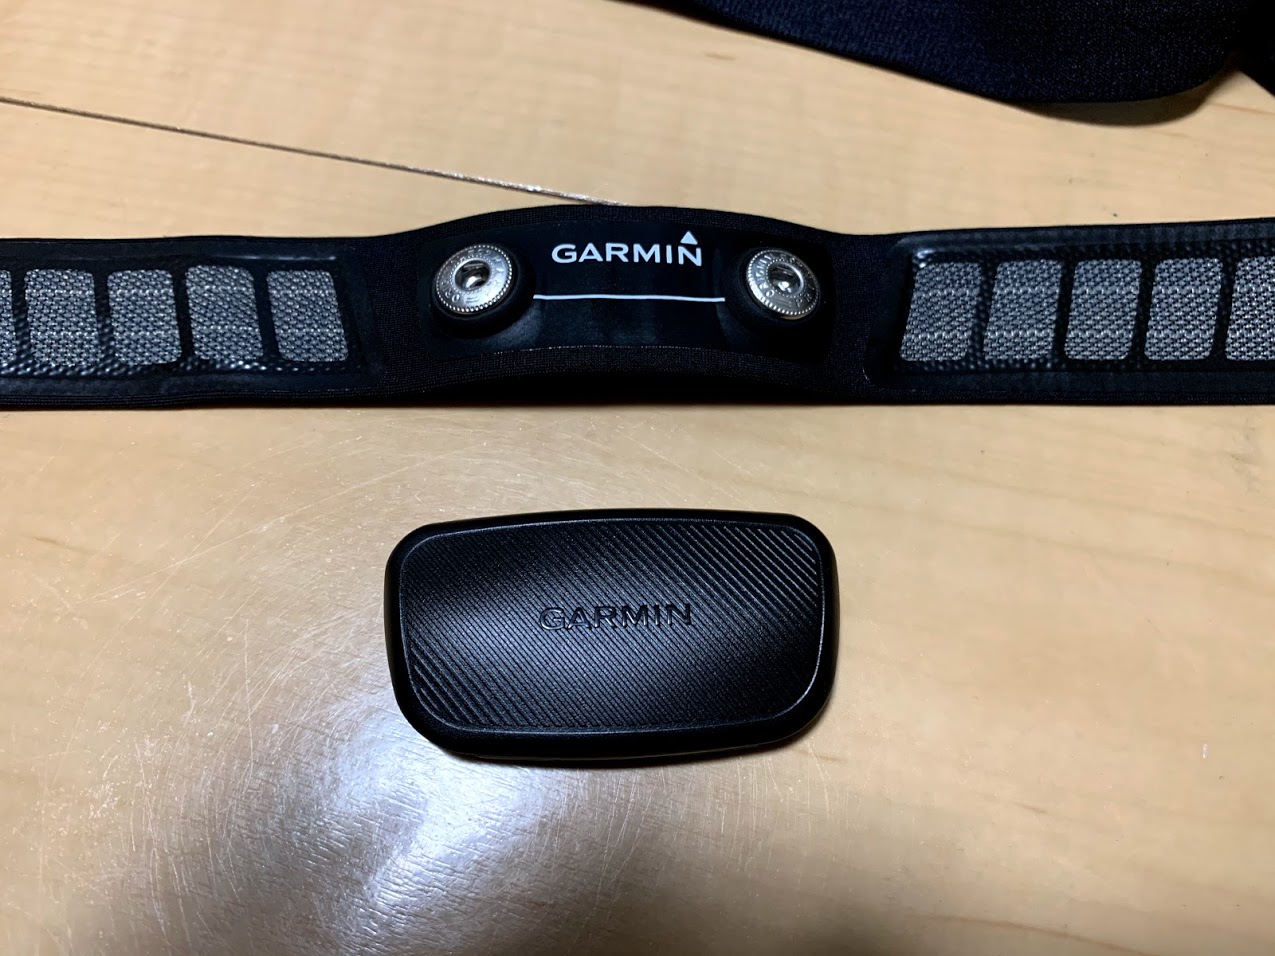 GARMIN ハートレートセンサー HRM-Dual の接続について | まっちゃんの 